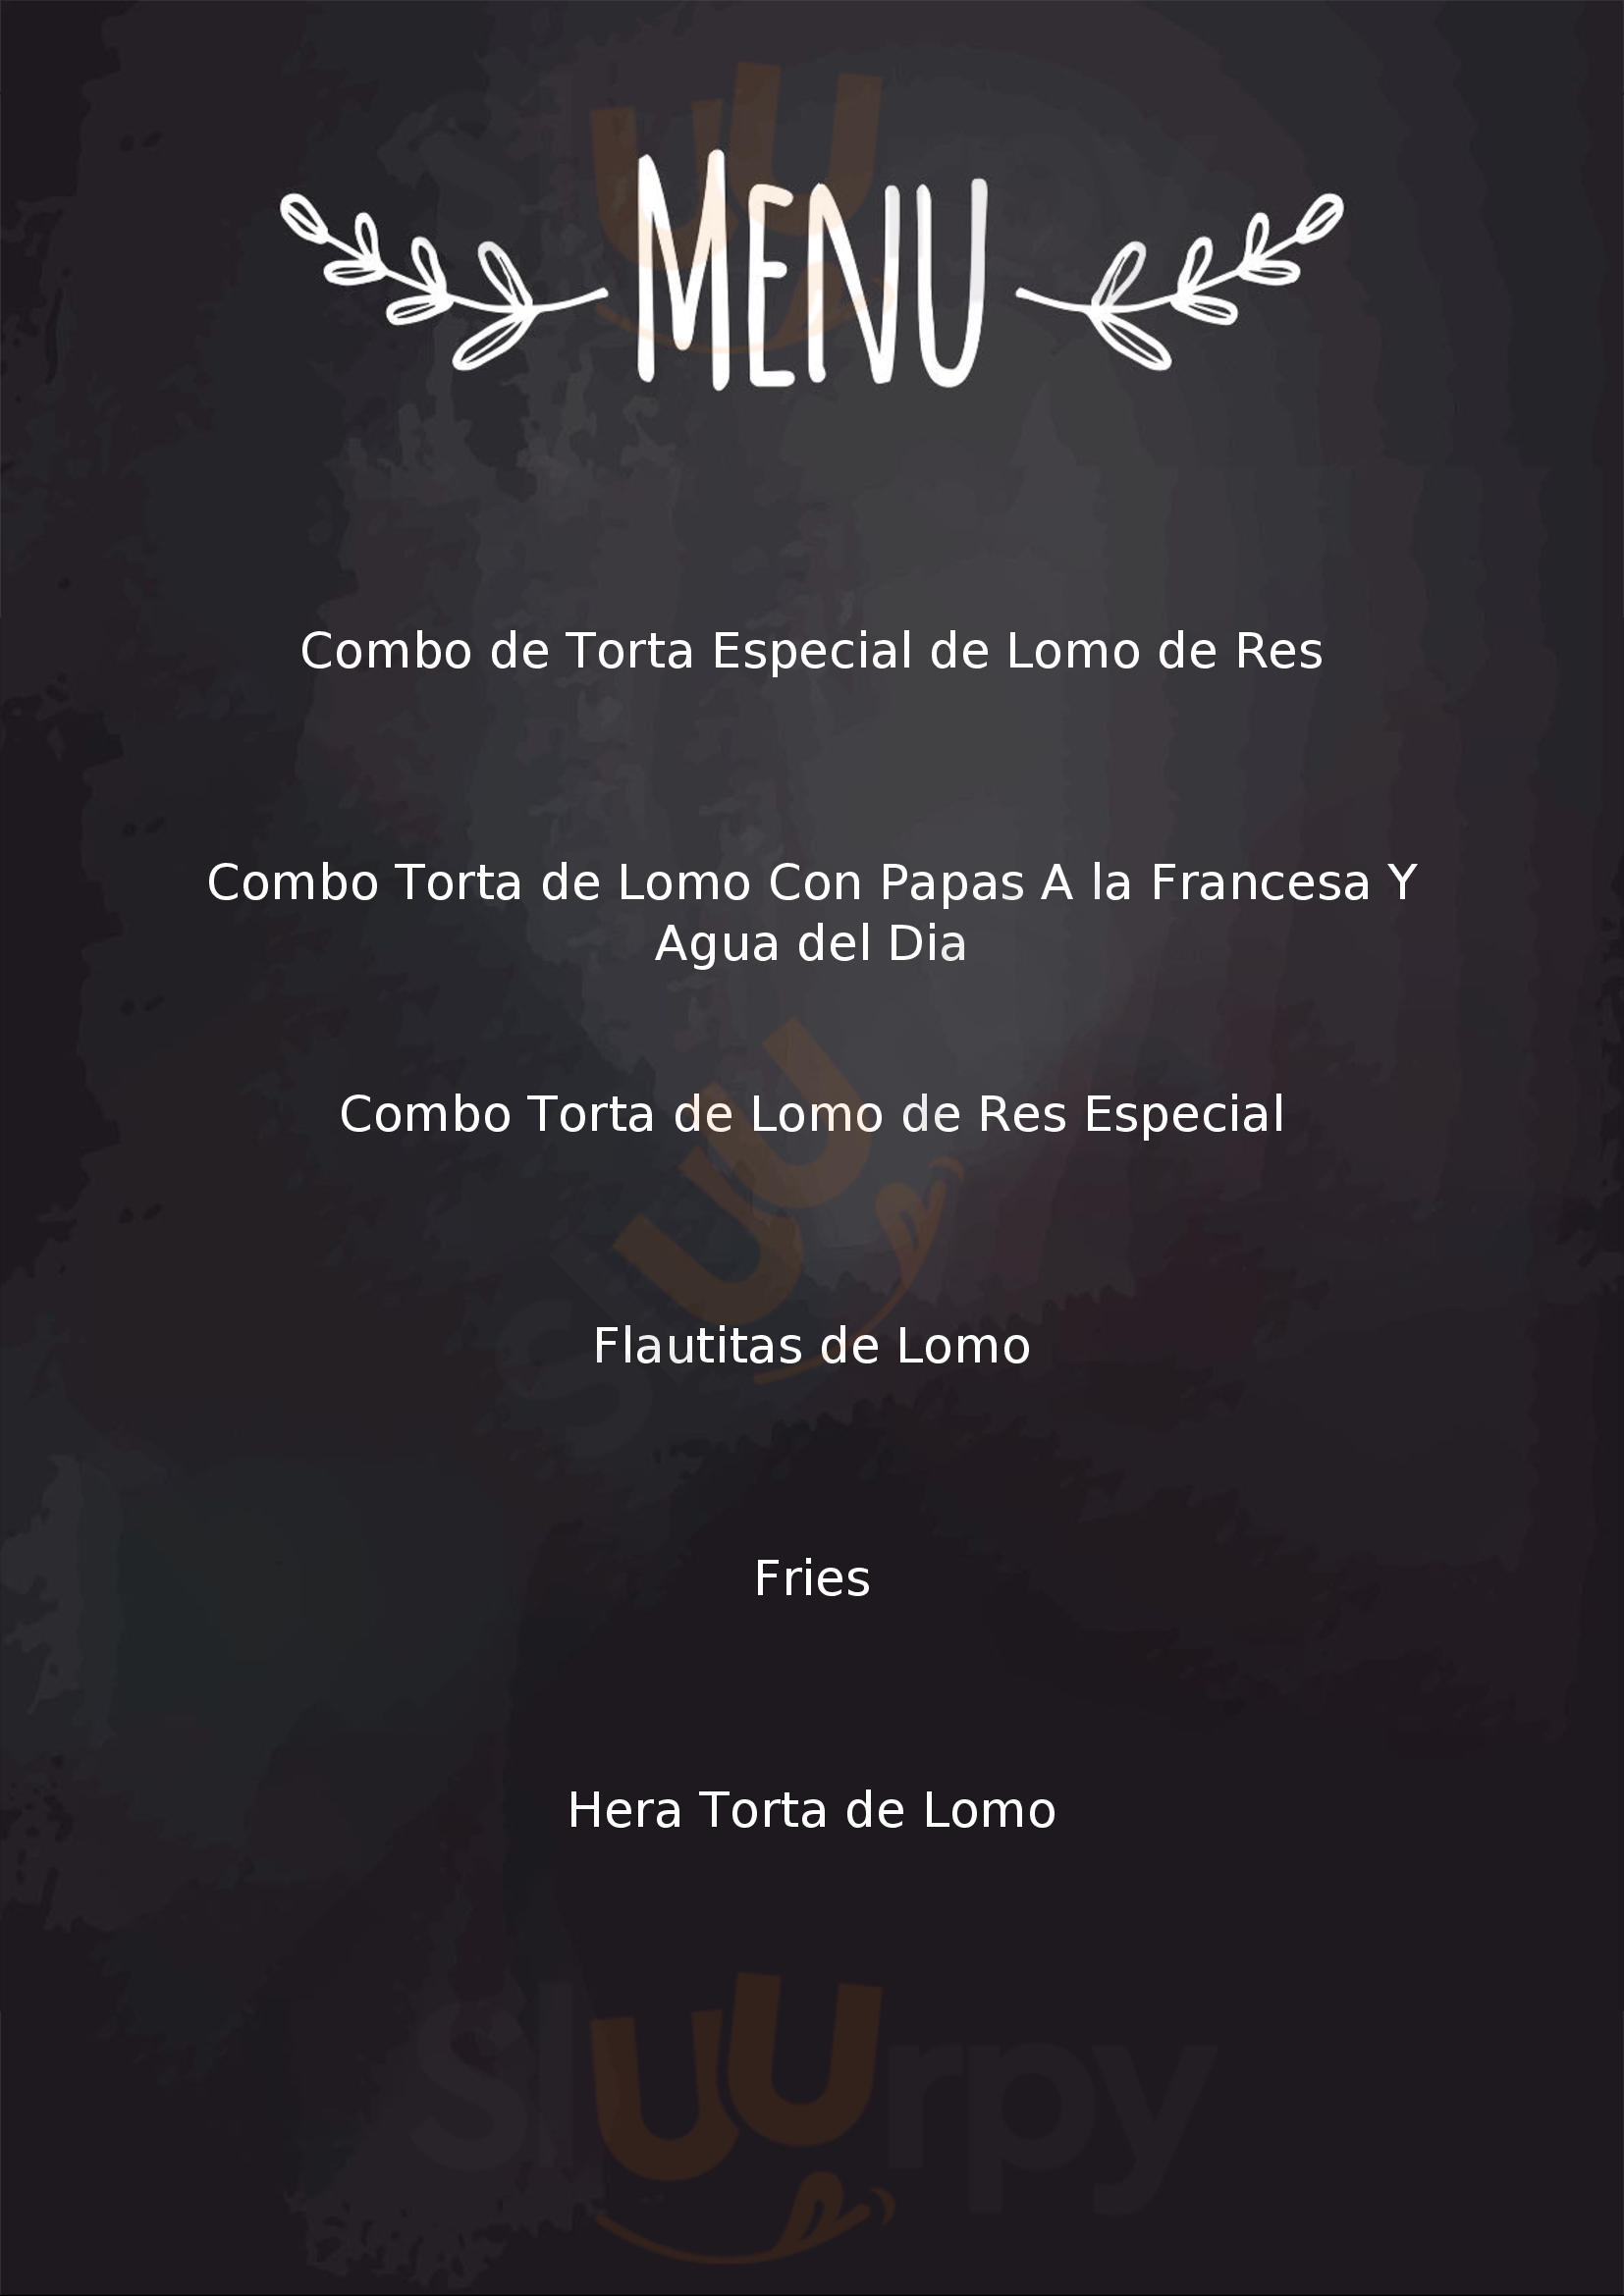 Tortas El Turco (plaza Milenio) Tijuana Menu - 1